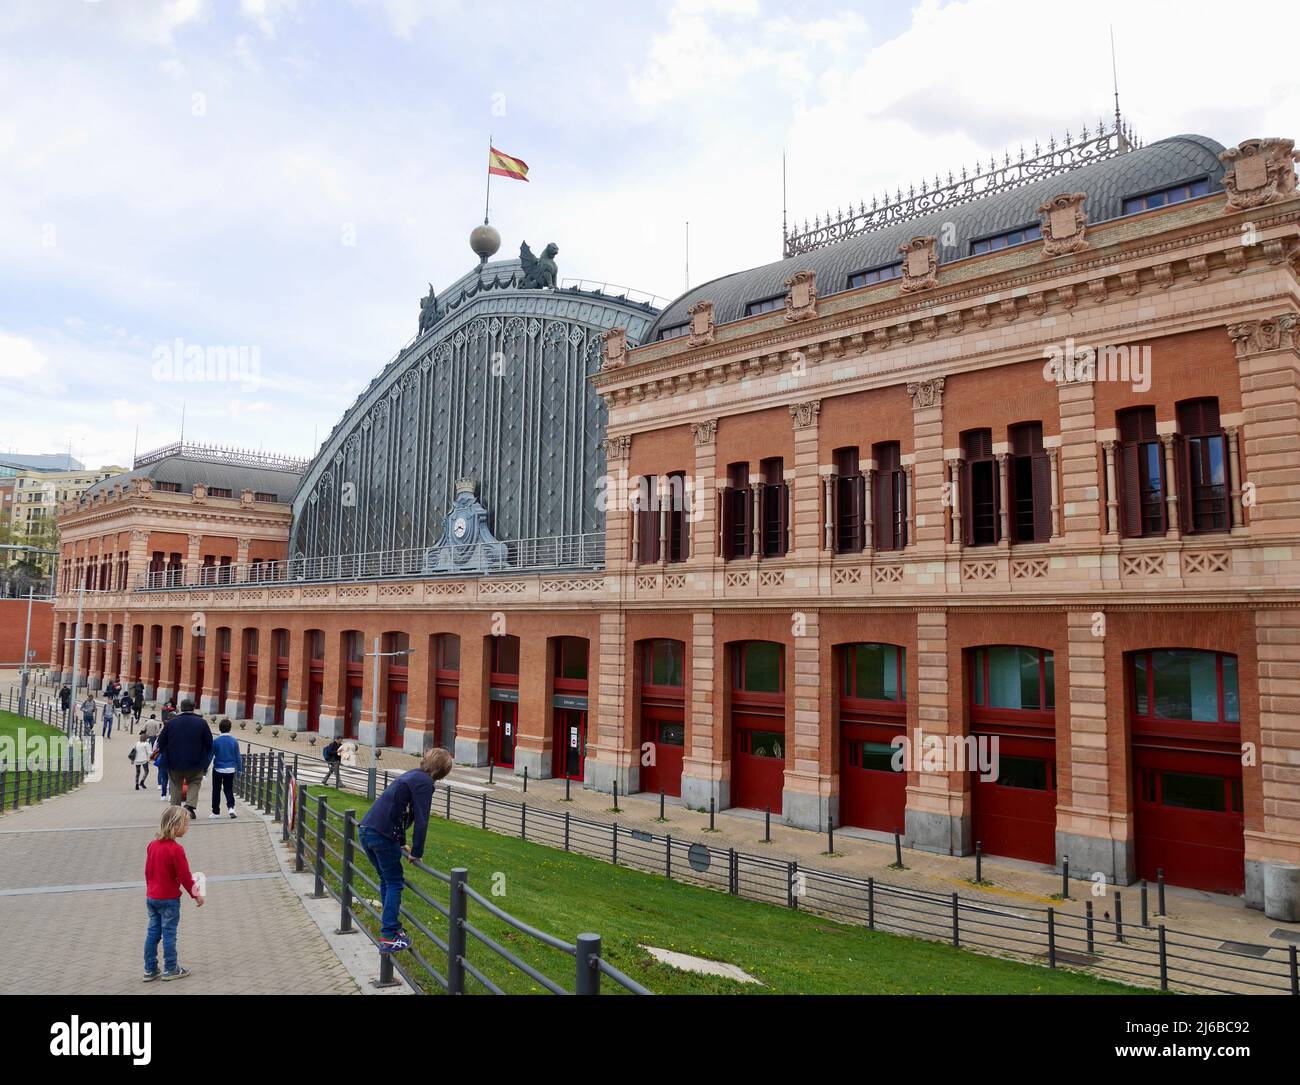 Madrid, Spagna, 12.04.2022. Vista esterna della vecchia stazione ferroviaria di Atocha, conosciuta per il suo giardino botanico. Foto di alta qualità Foto Stock